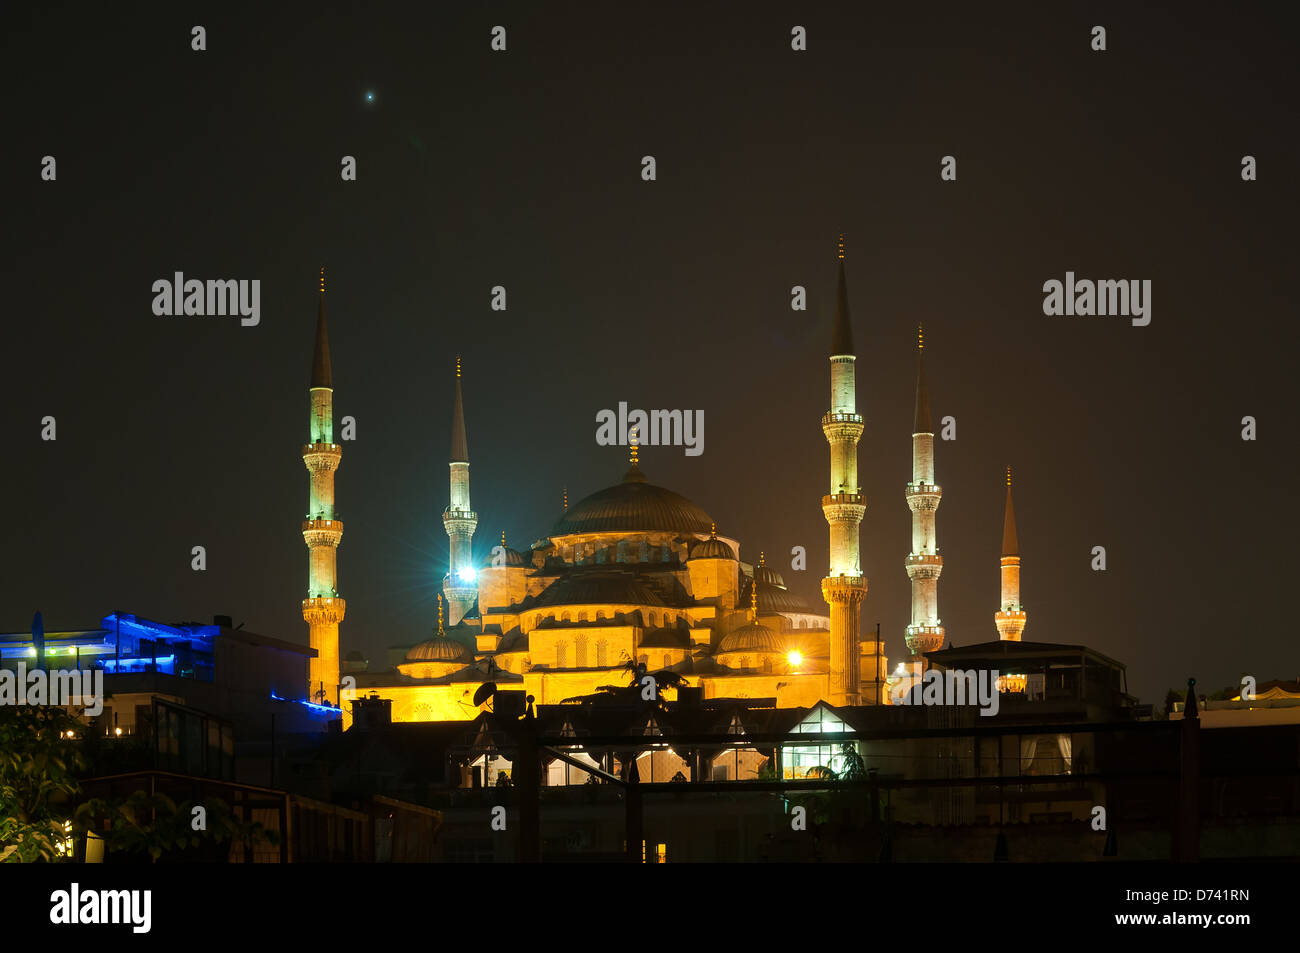 La mosquée bleue de nuit, Sultanahmet, Istanbul, Turquie Banque D'Images